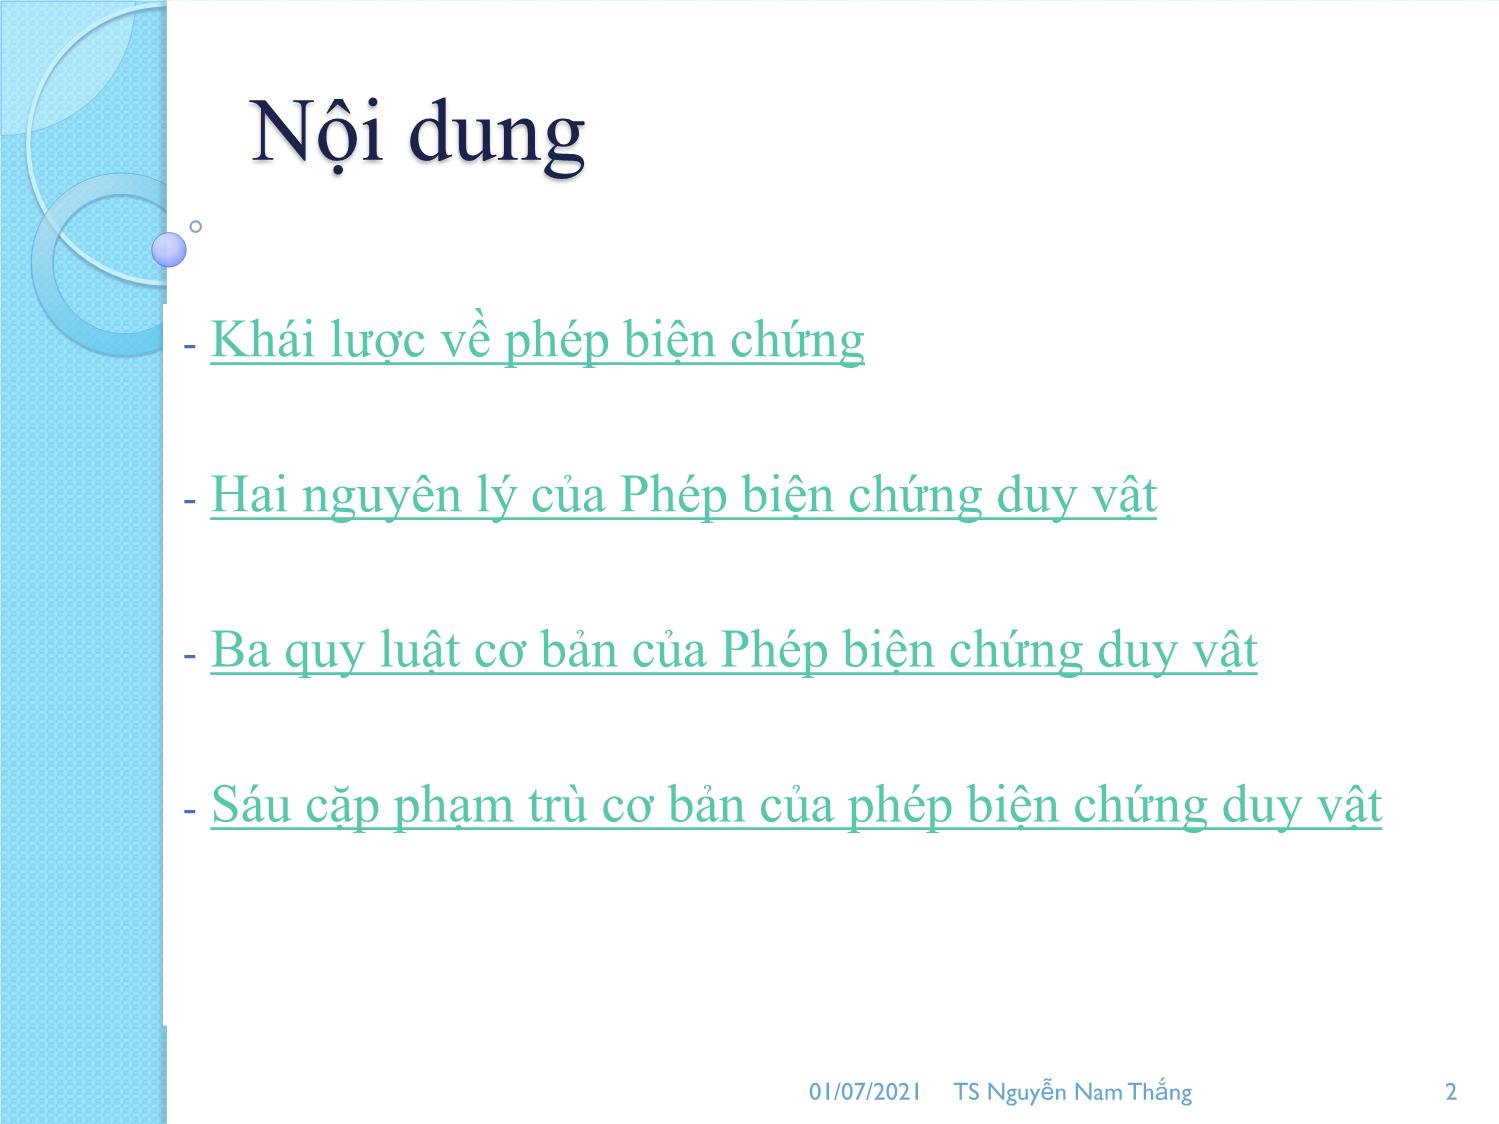 Bài giảng Phép biện chứng duy vật - Nguyễn Nam Thắng trang 2